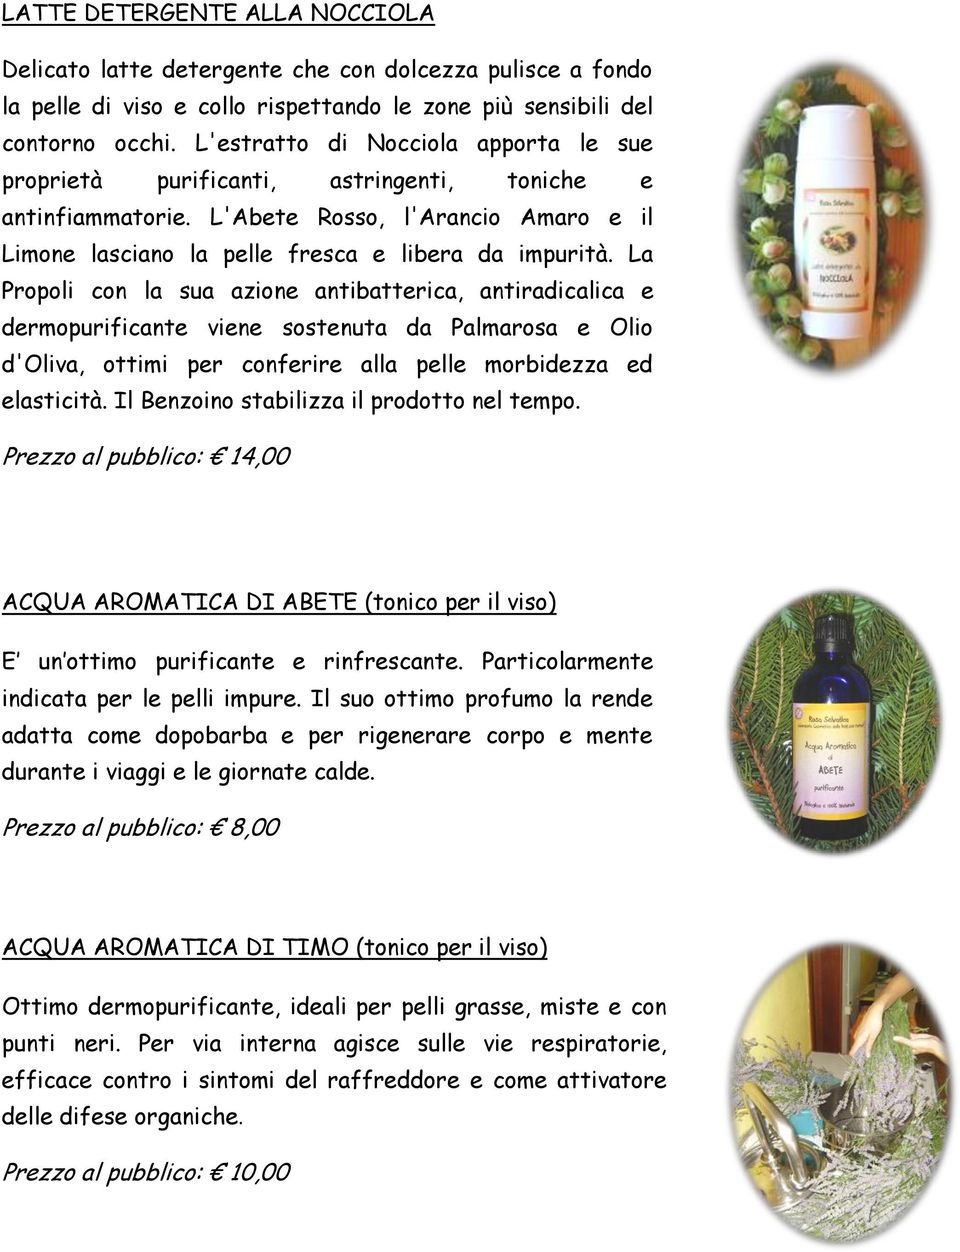 La Propoli con la sua azione antibatterica, antiradicalica e dermopurificante viene sostenuta da Palmarosa e Olio d'oliva, ottimi per conferire alla pelle morbidezza ed elasticità.